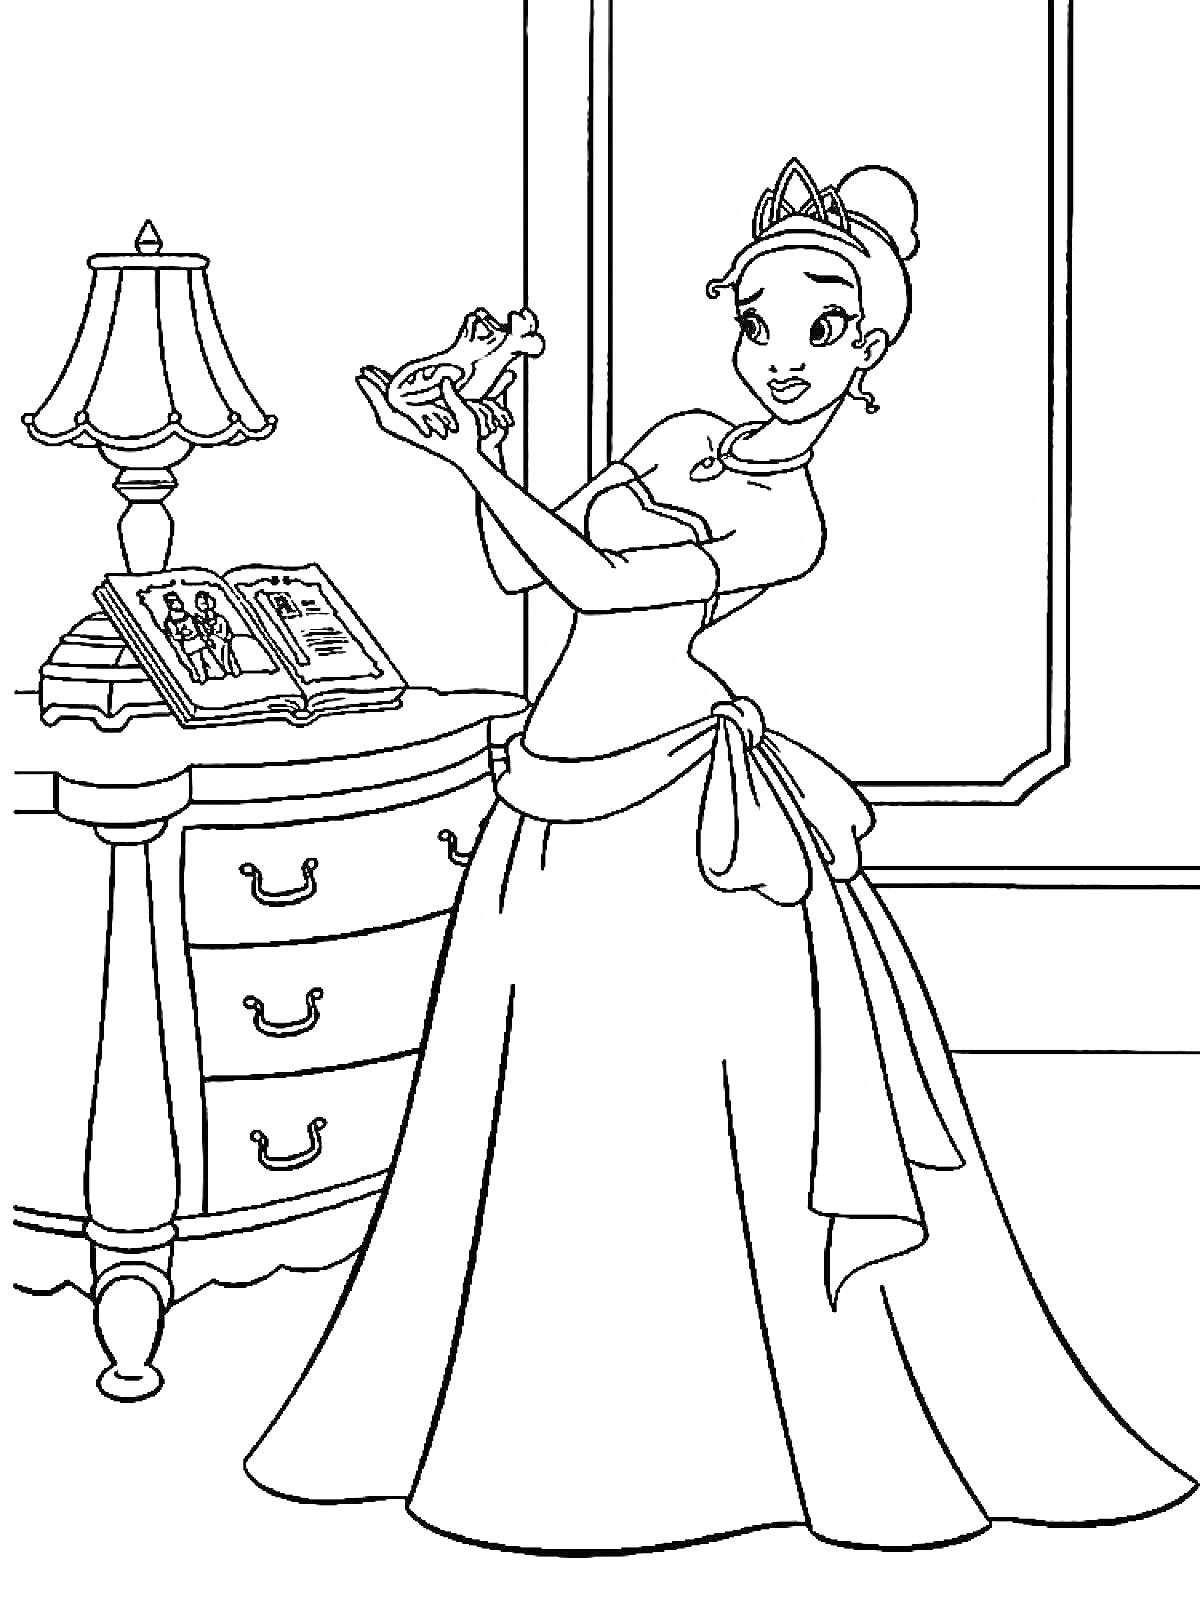 Раскраска Принцесса с лягушкой, комод с книгами, лампа, окно